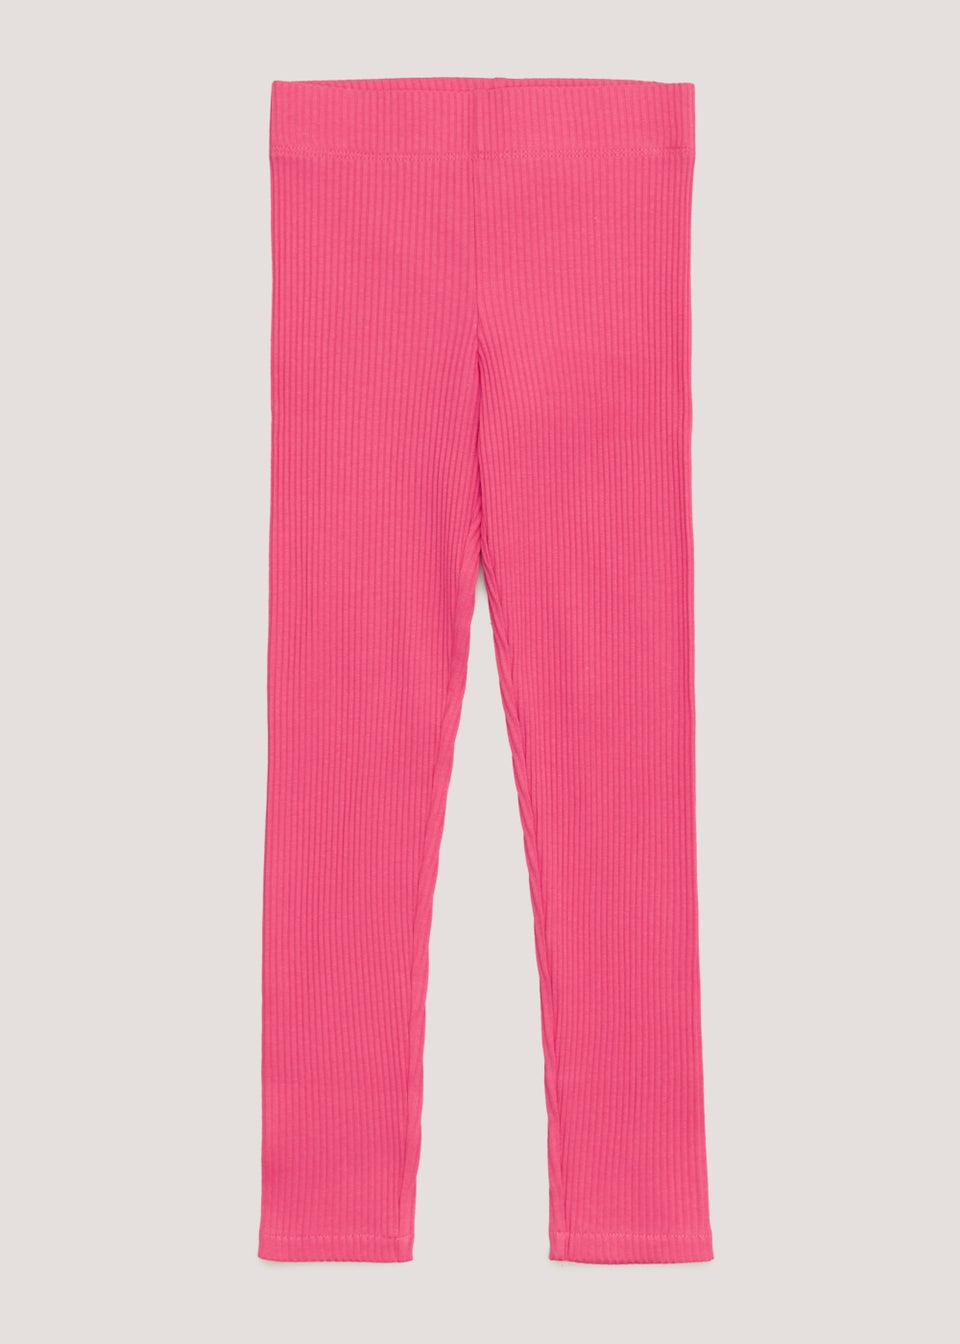 Pink Print Full Length Casual Girls Regular Fit Leggings - Selling Fast at  Pantaloons.com